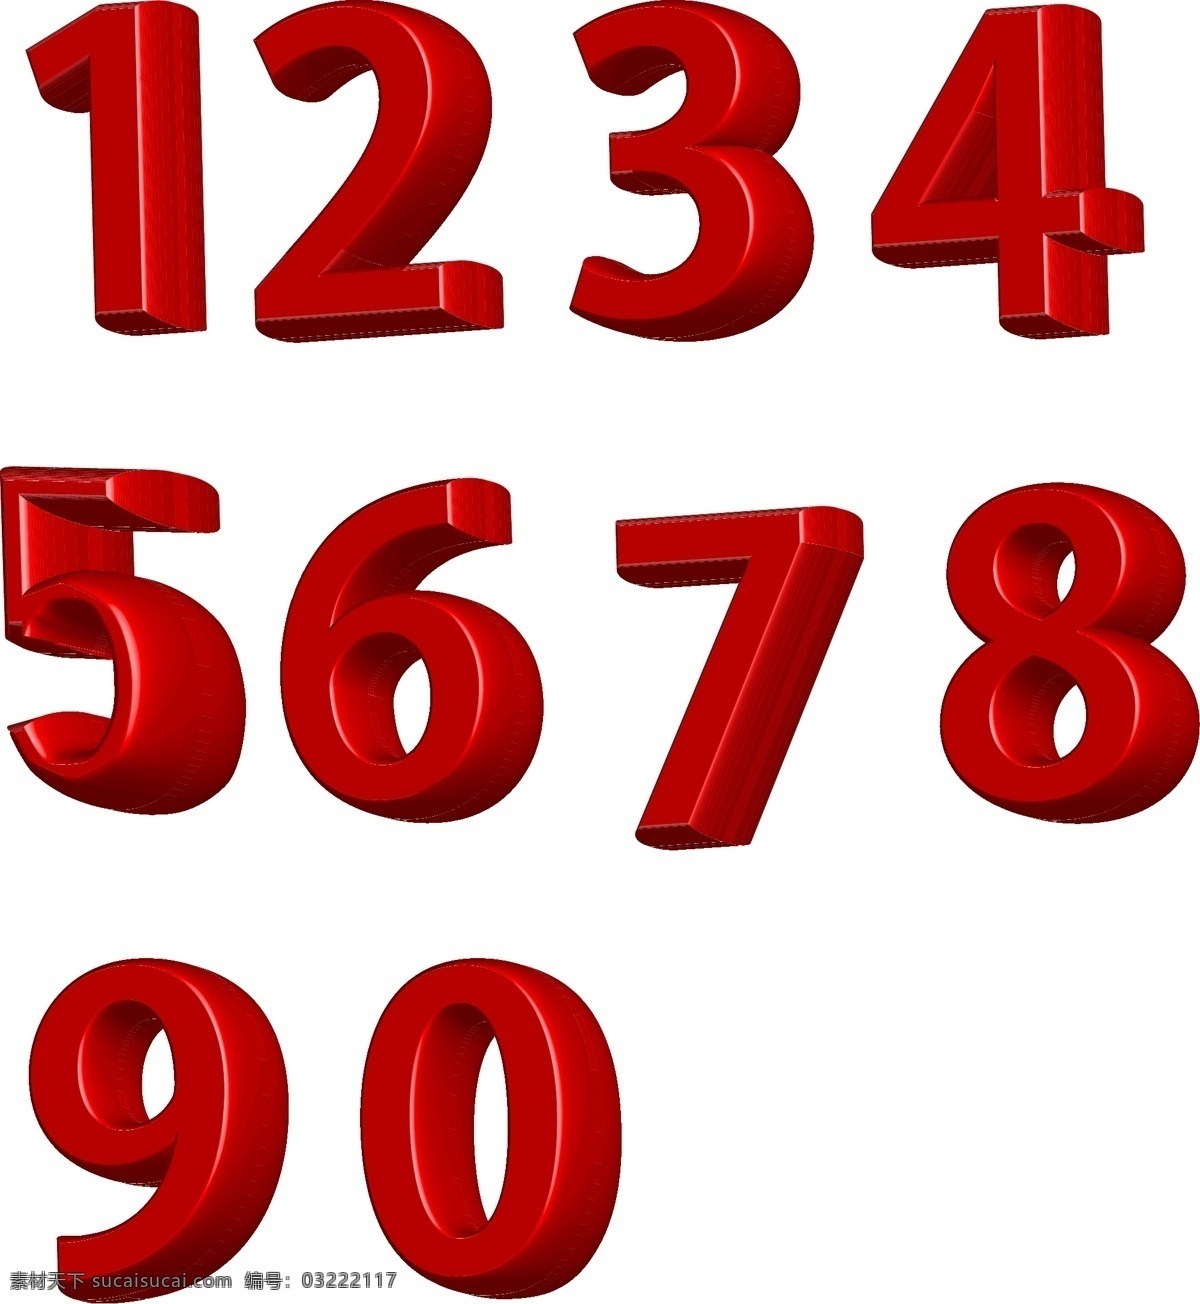 数字 立体数字 红色数字 全部数字 3d数字 生活百科 办公用品